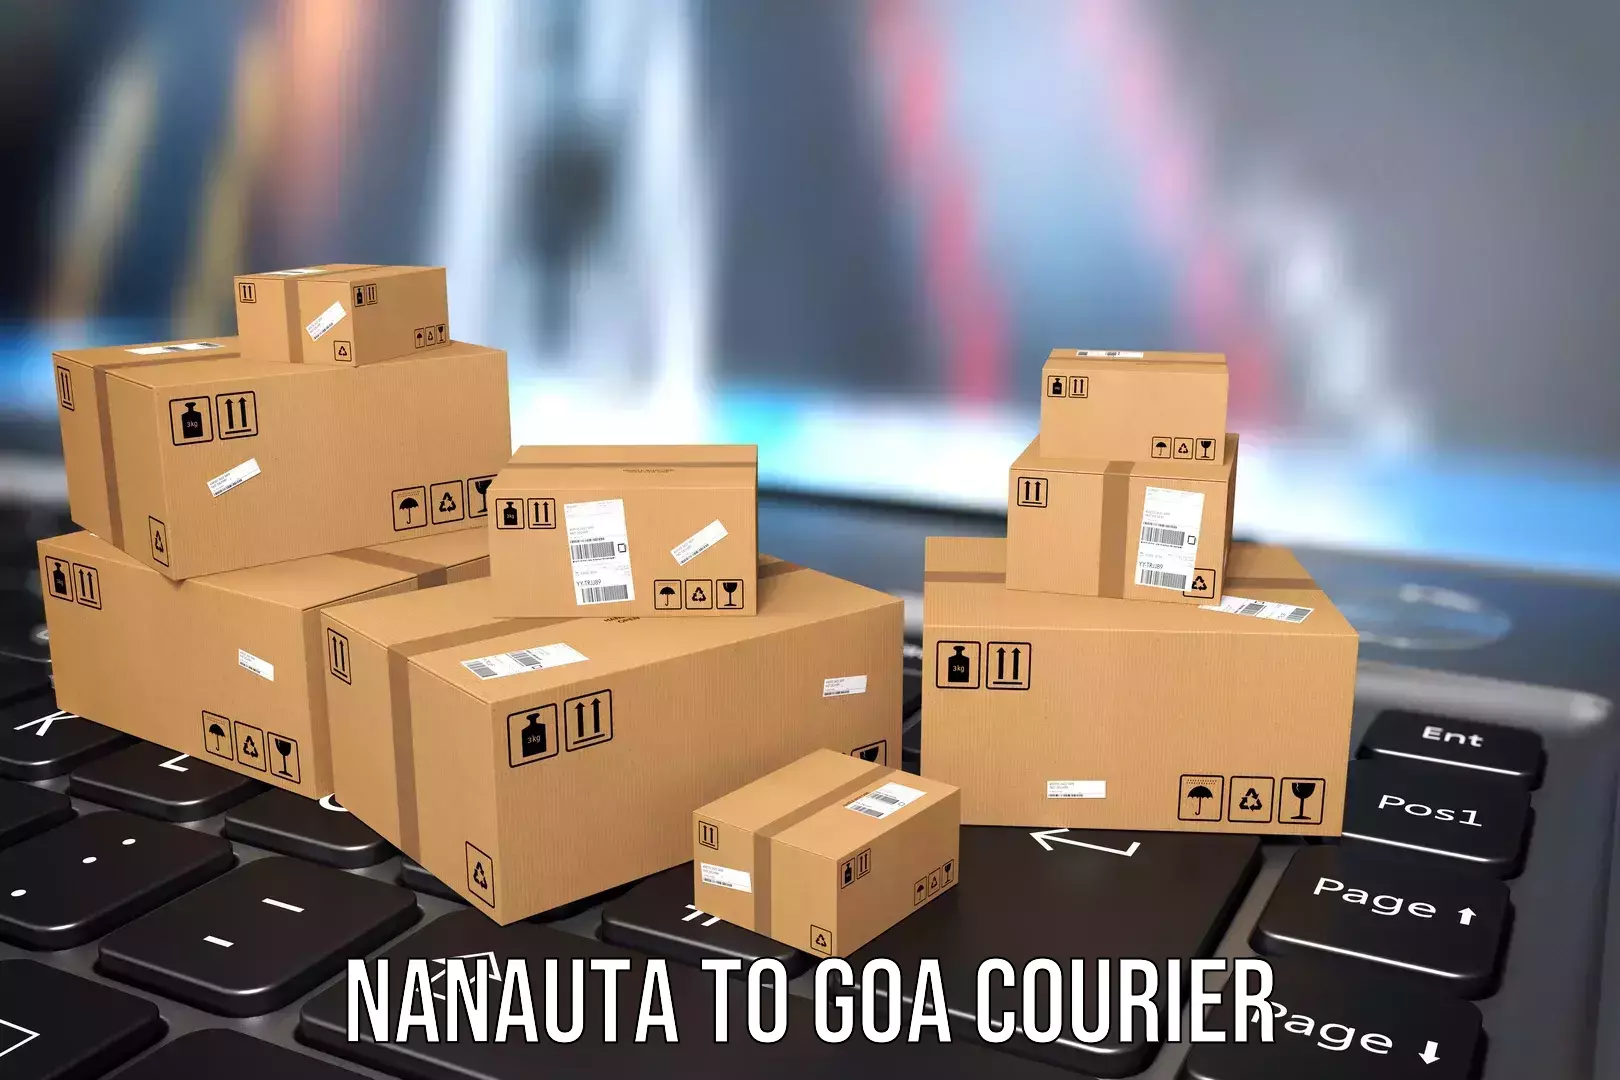 Rural baggage transport Nanauta to NIT Goa